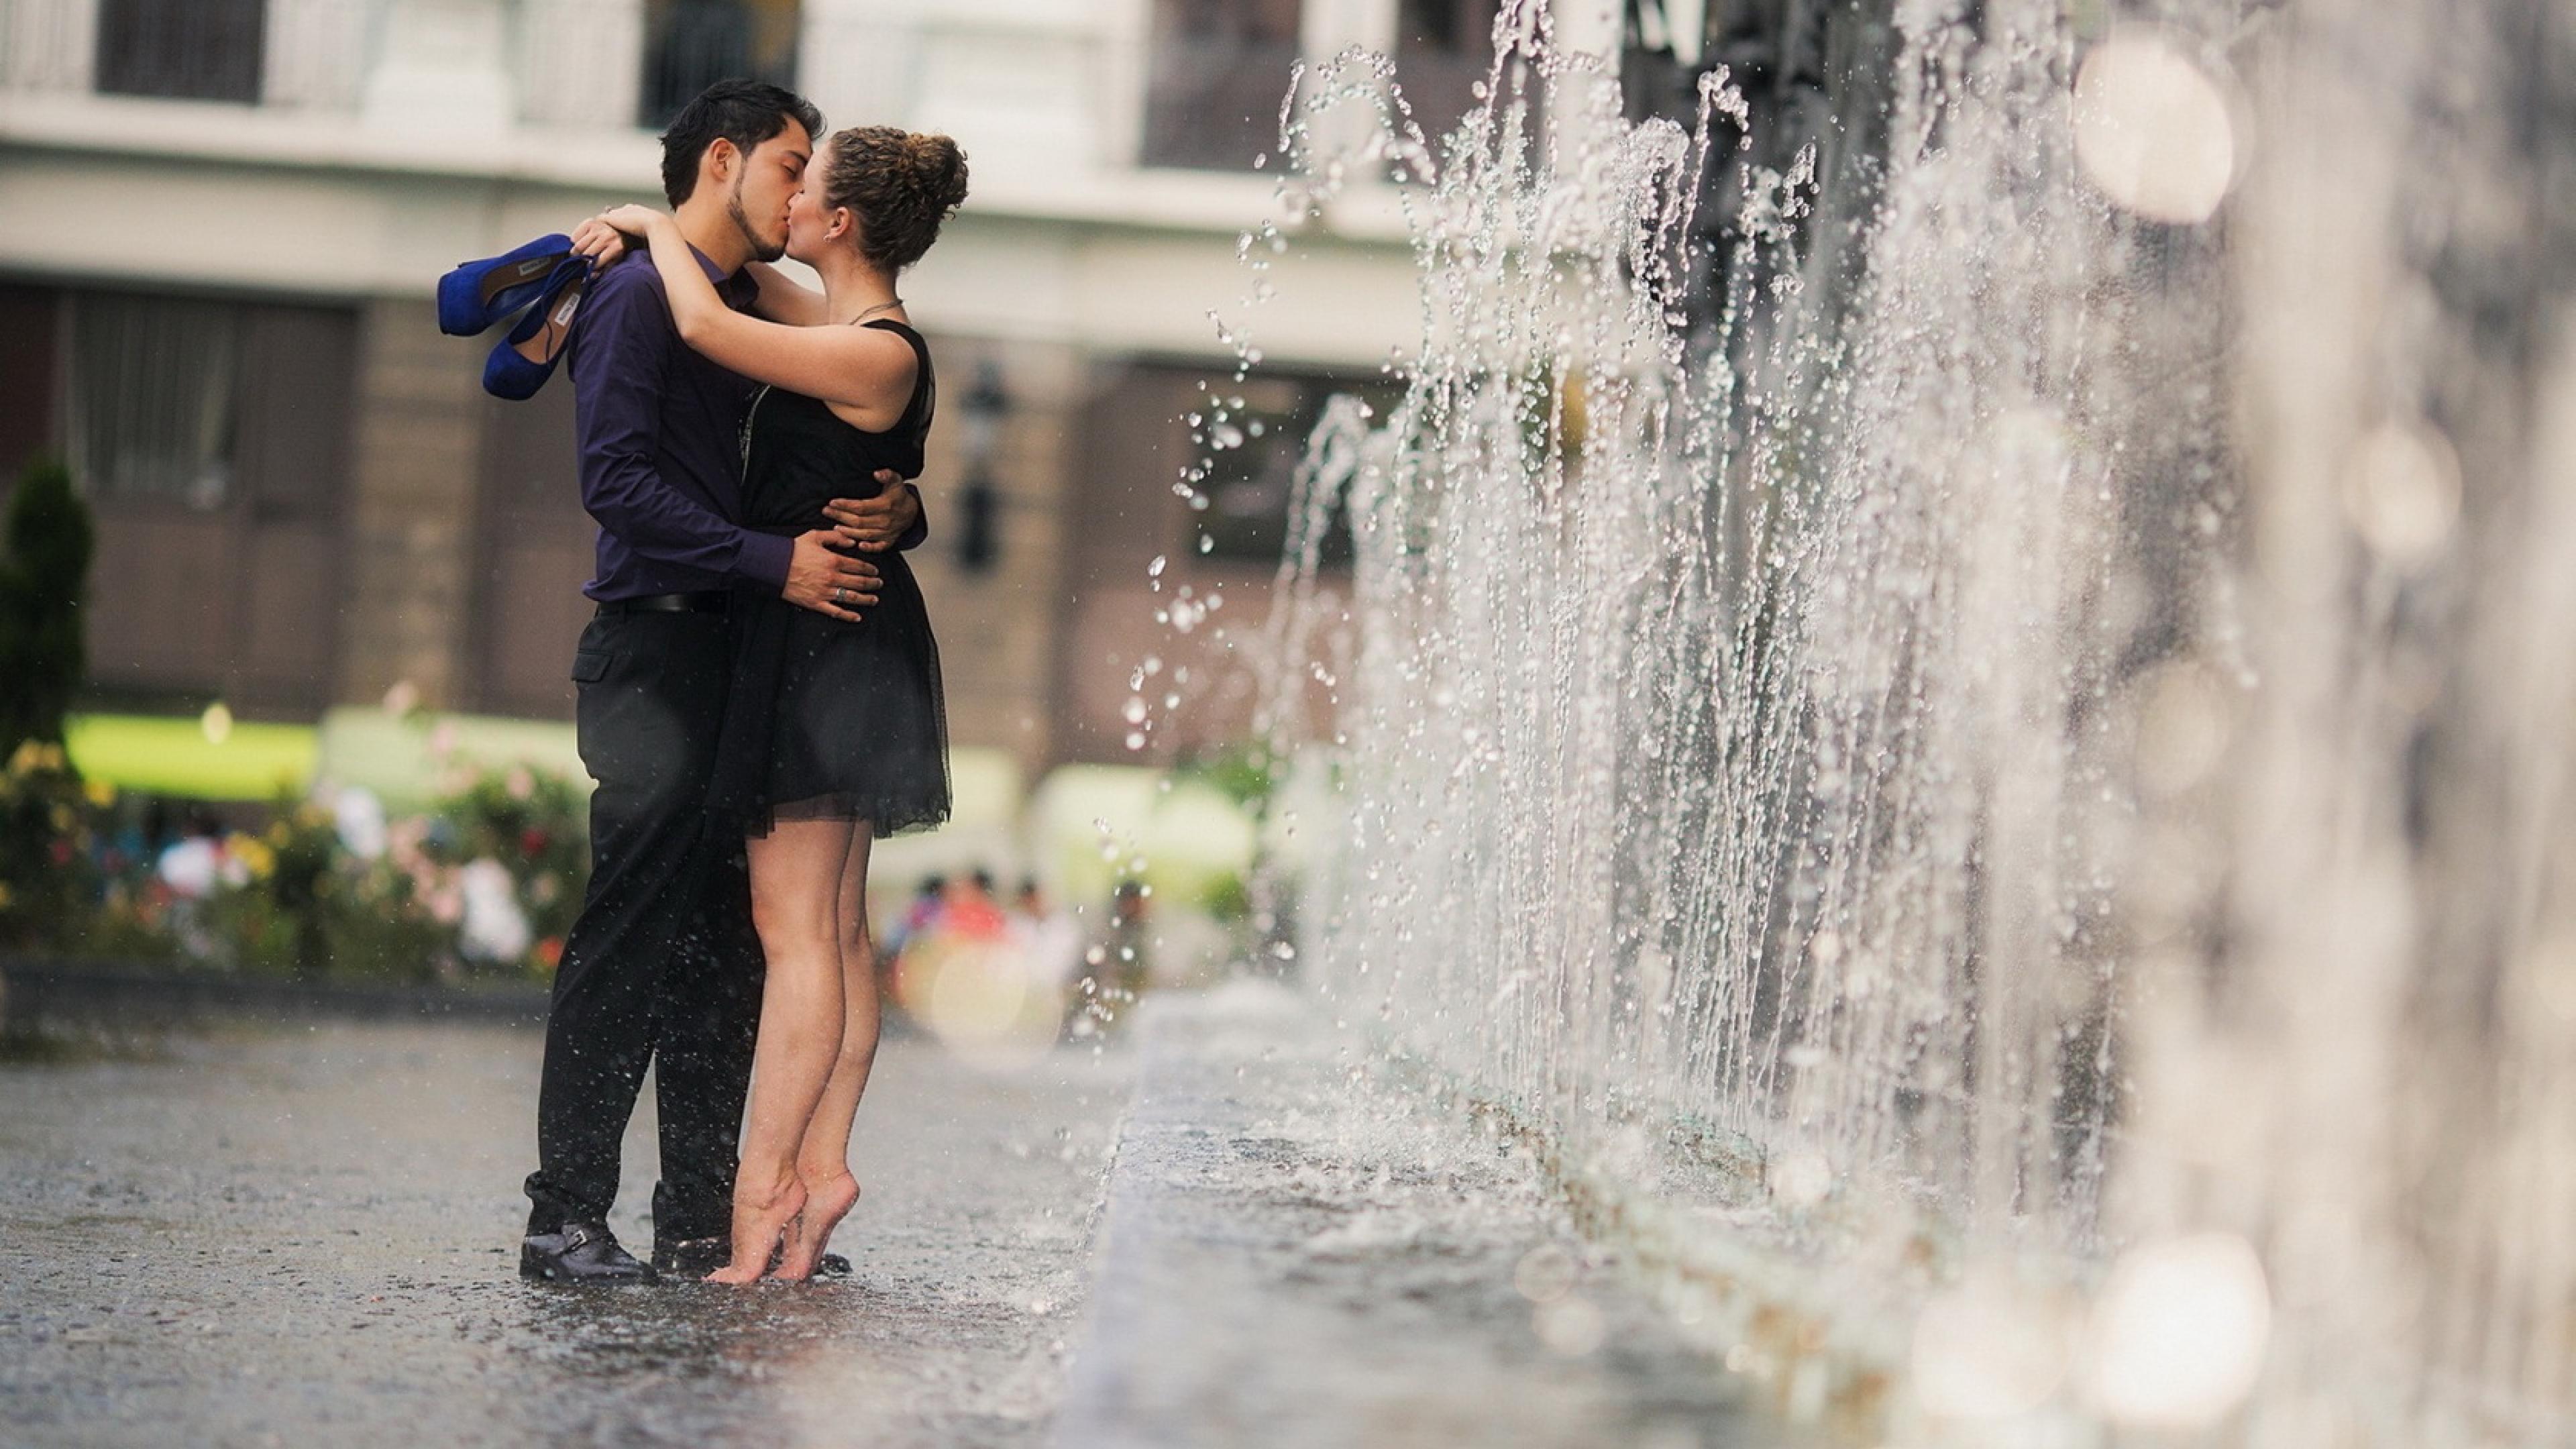 Случайная картинка. Романтические поступки. Мужчина и женщина под дождем. Радостная встреча. Романтичное настроение.